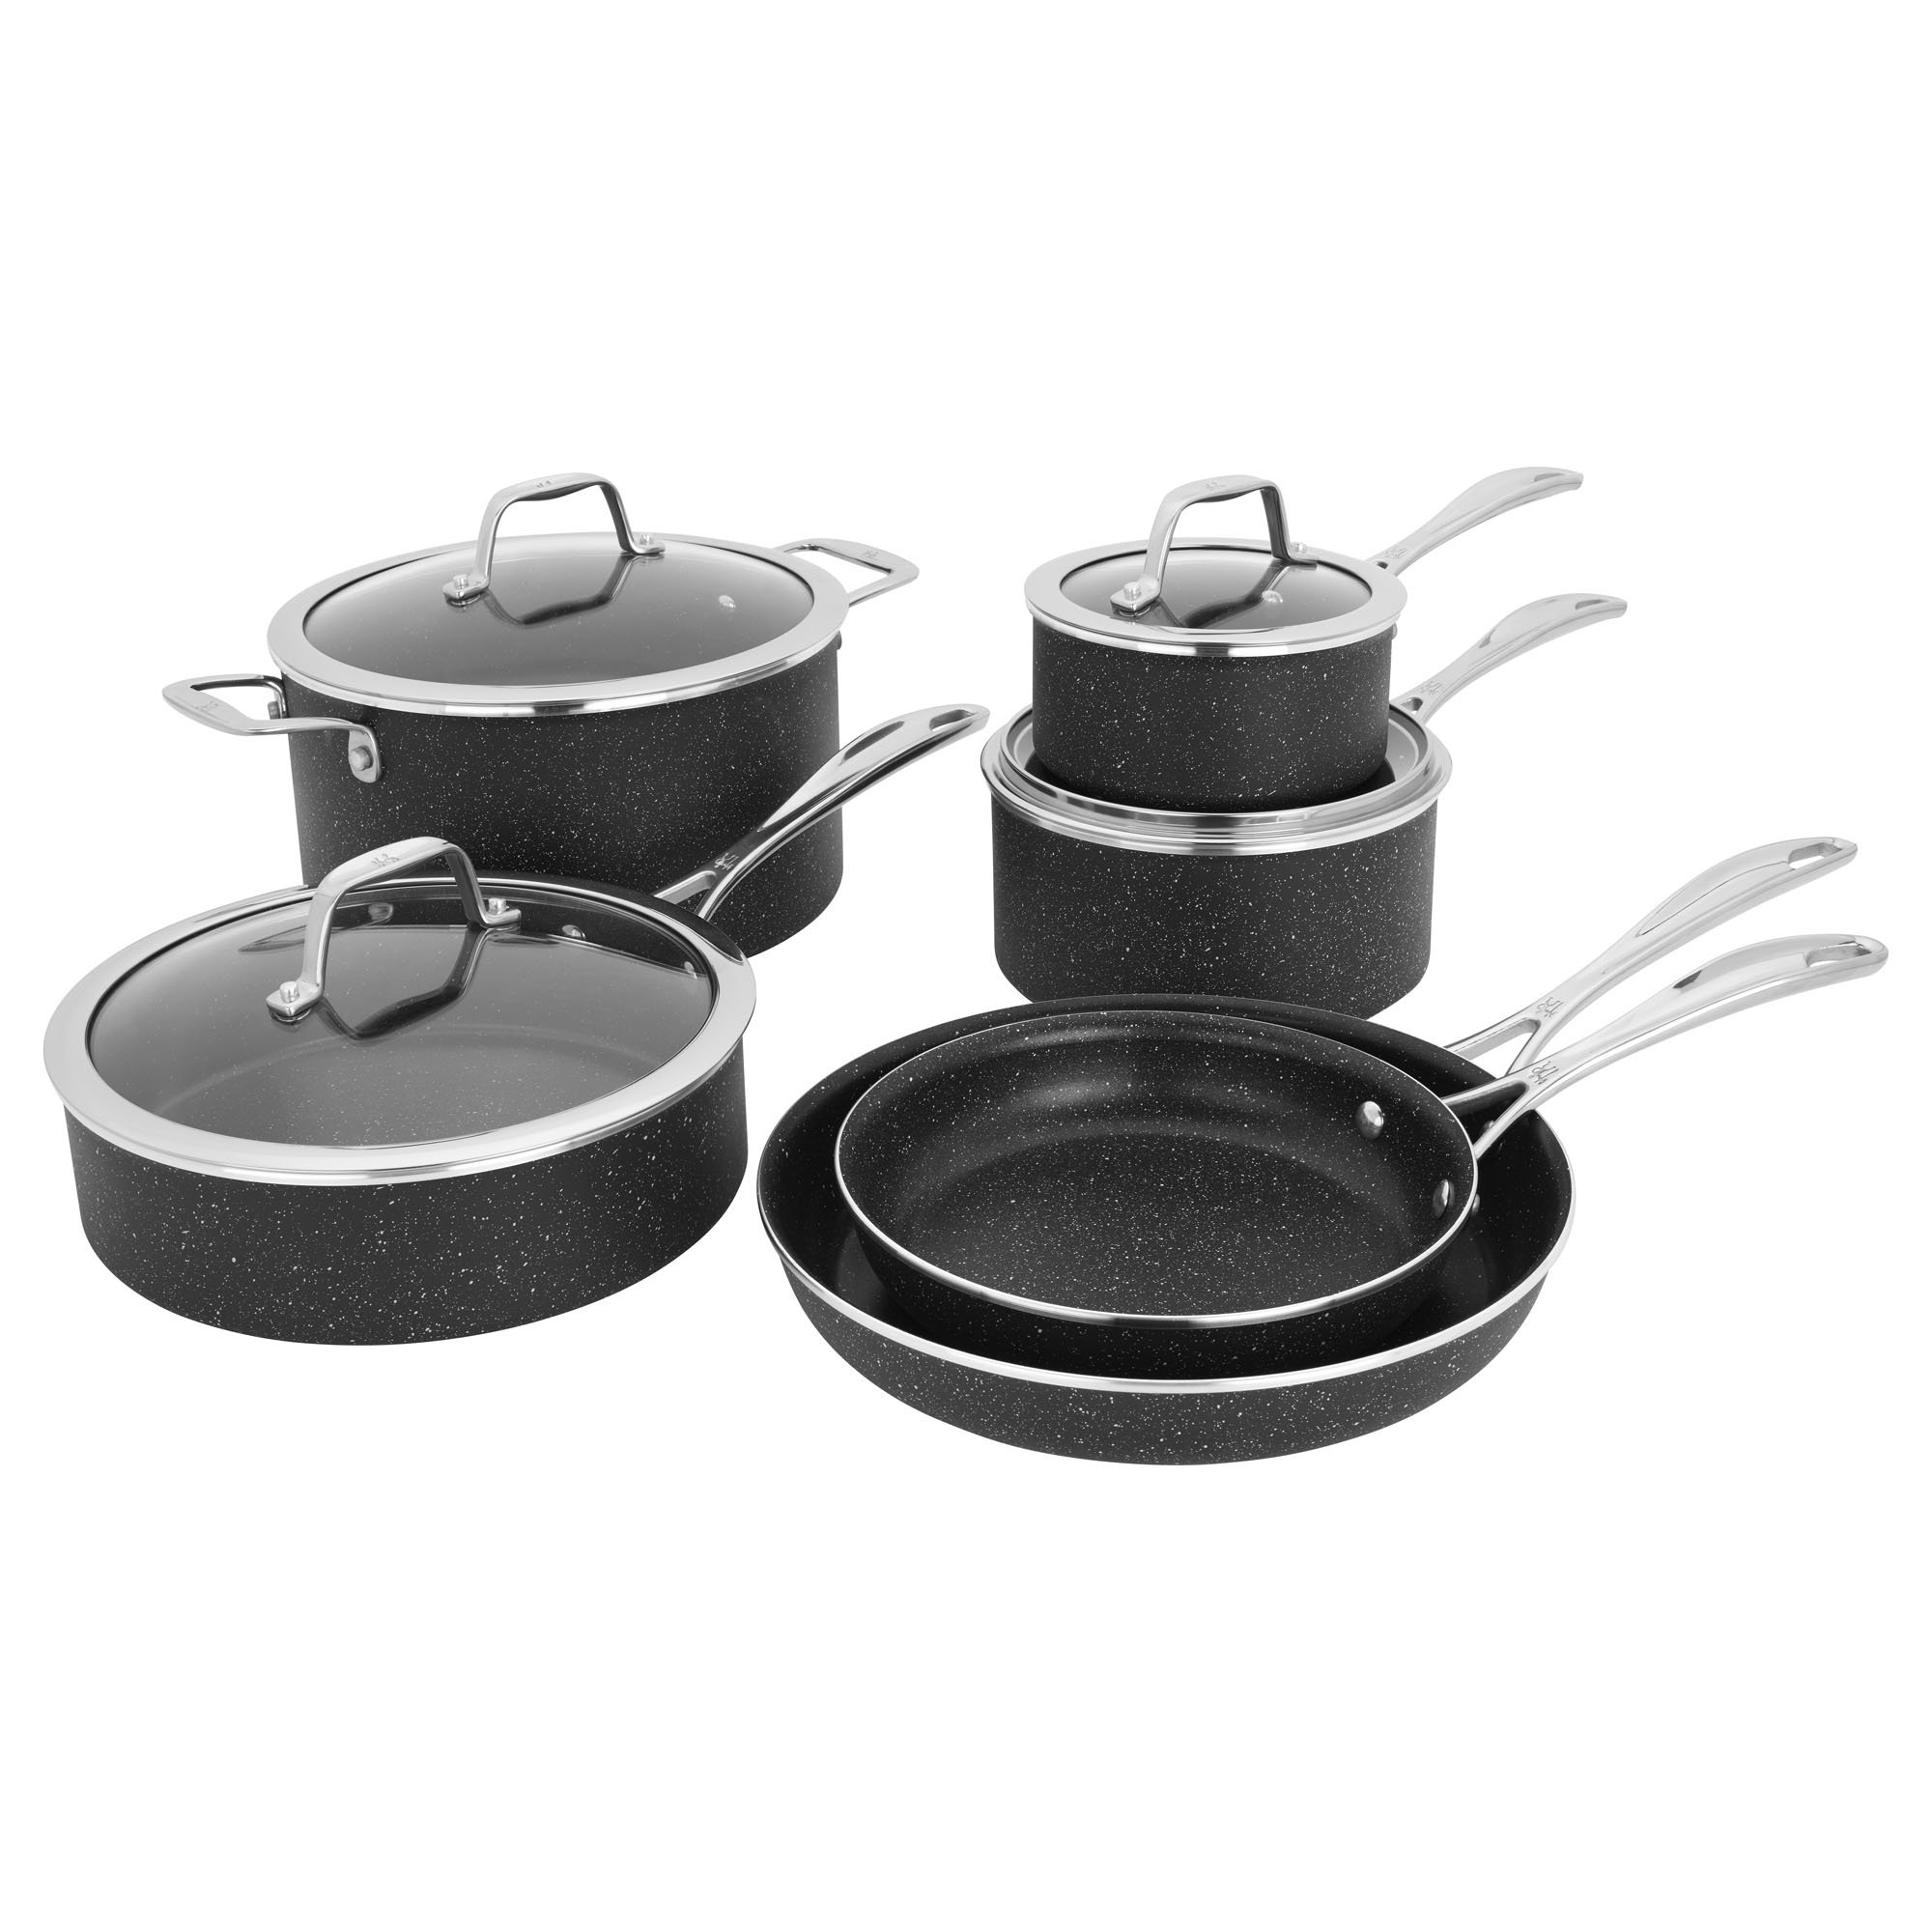 https://assets.wfcdn.com/im/02179696/compr-r85/2177/217702001/henckels-10-piece-aluminum-non-stick-cookware-set.jpg